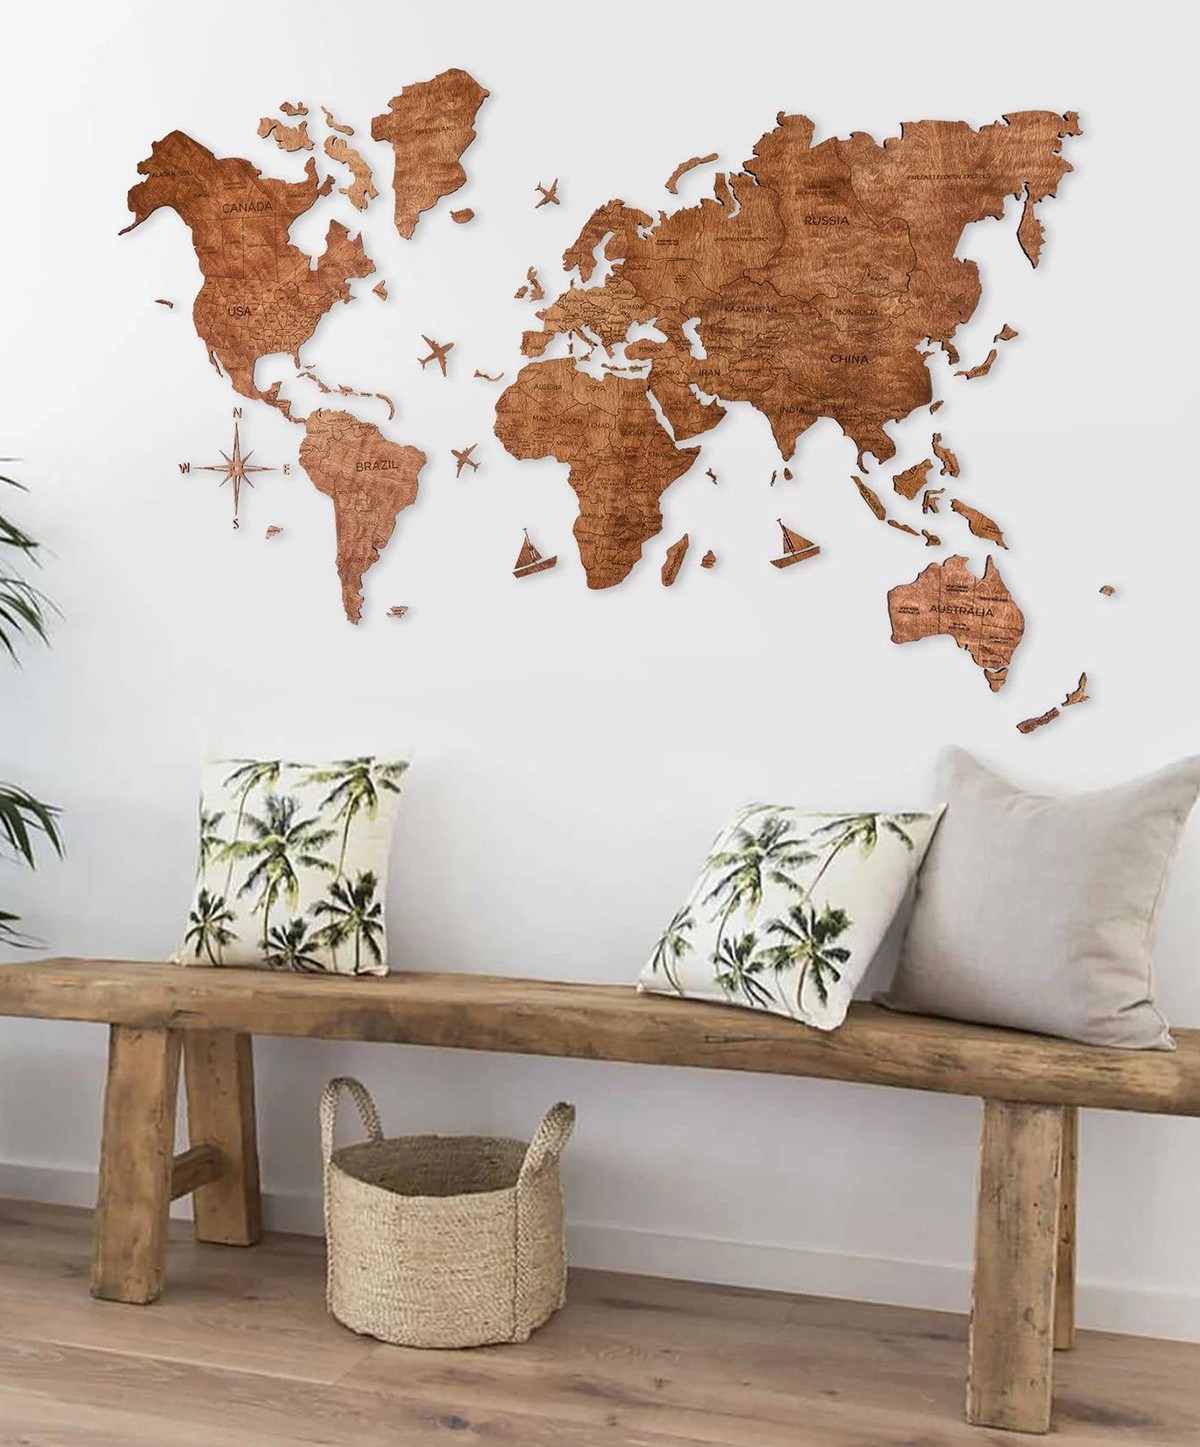 Dünya meşe haritasının duvar resmi